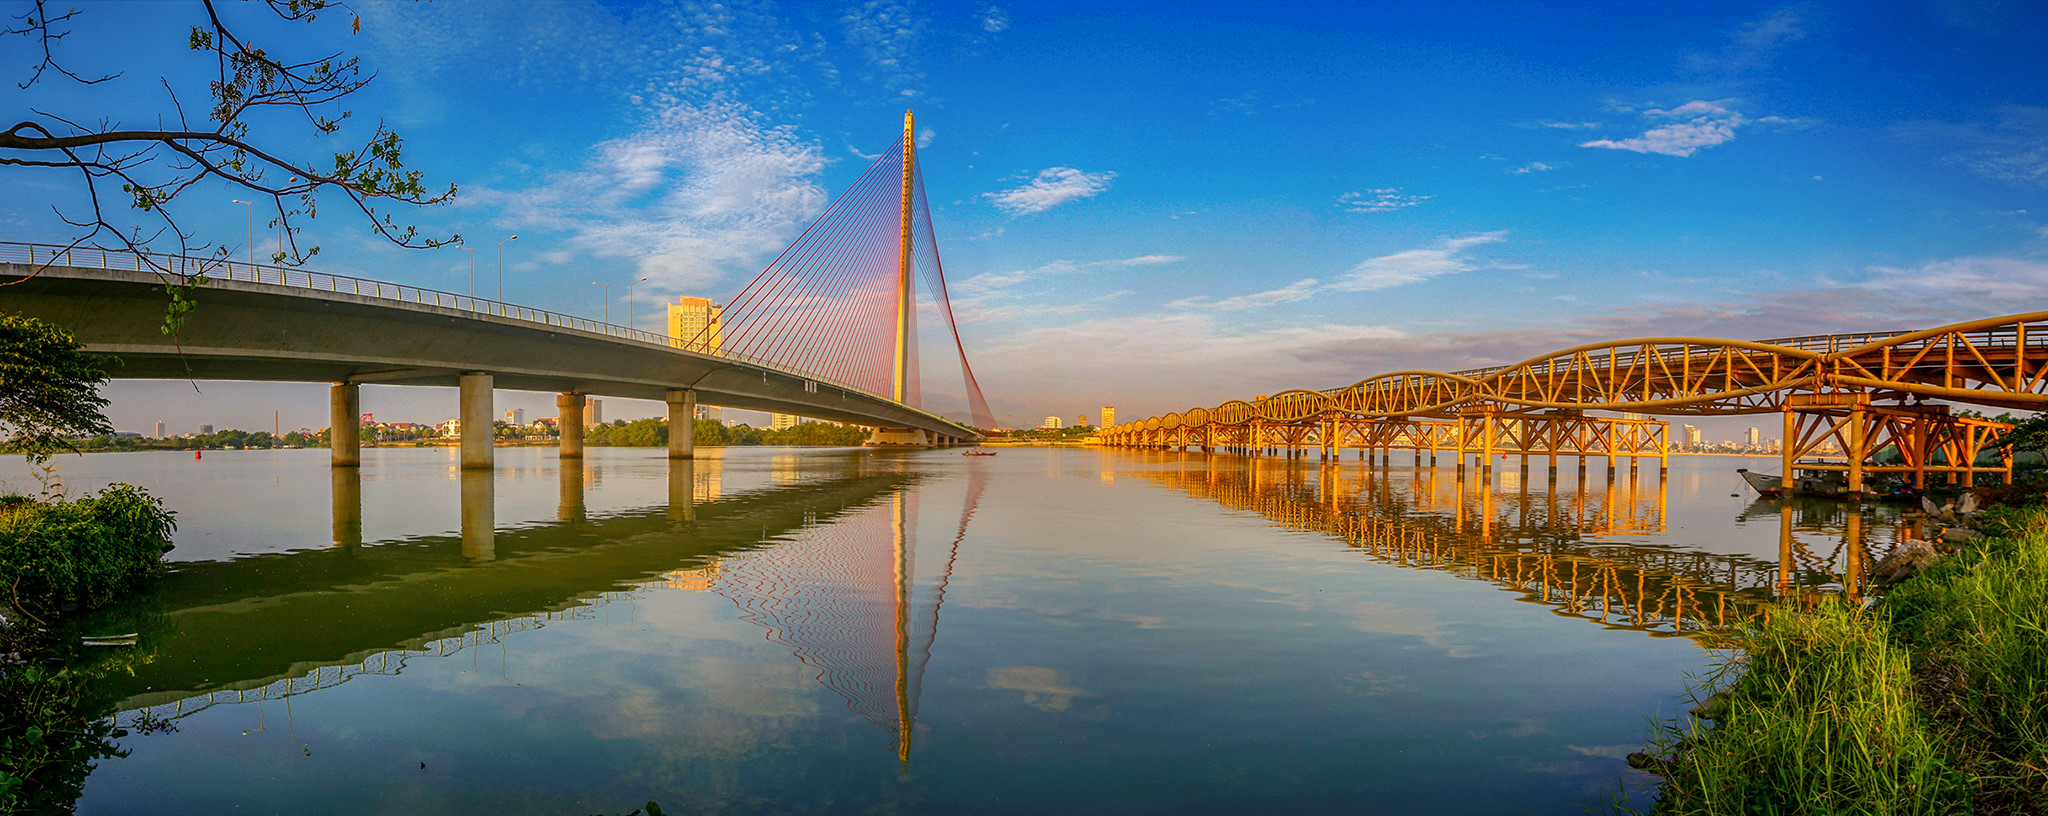 Cầu Trần Thị Lý được xây dựng ngay gần cây cầu lịch sử Nguyễn Văn Trỗi.